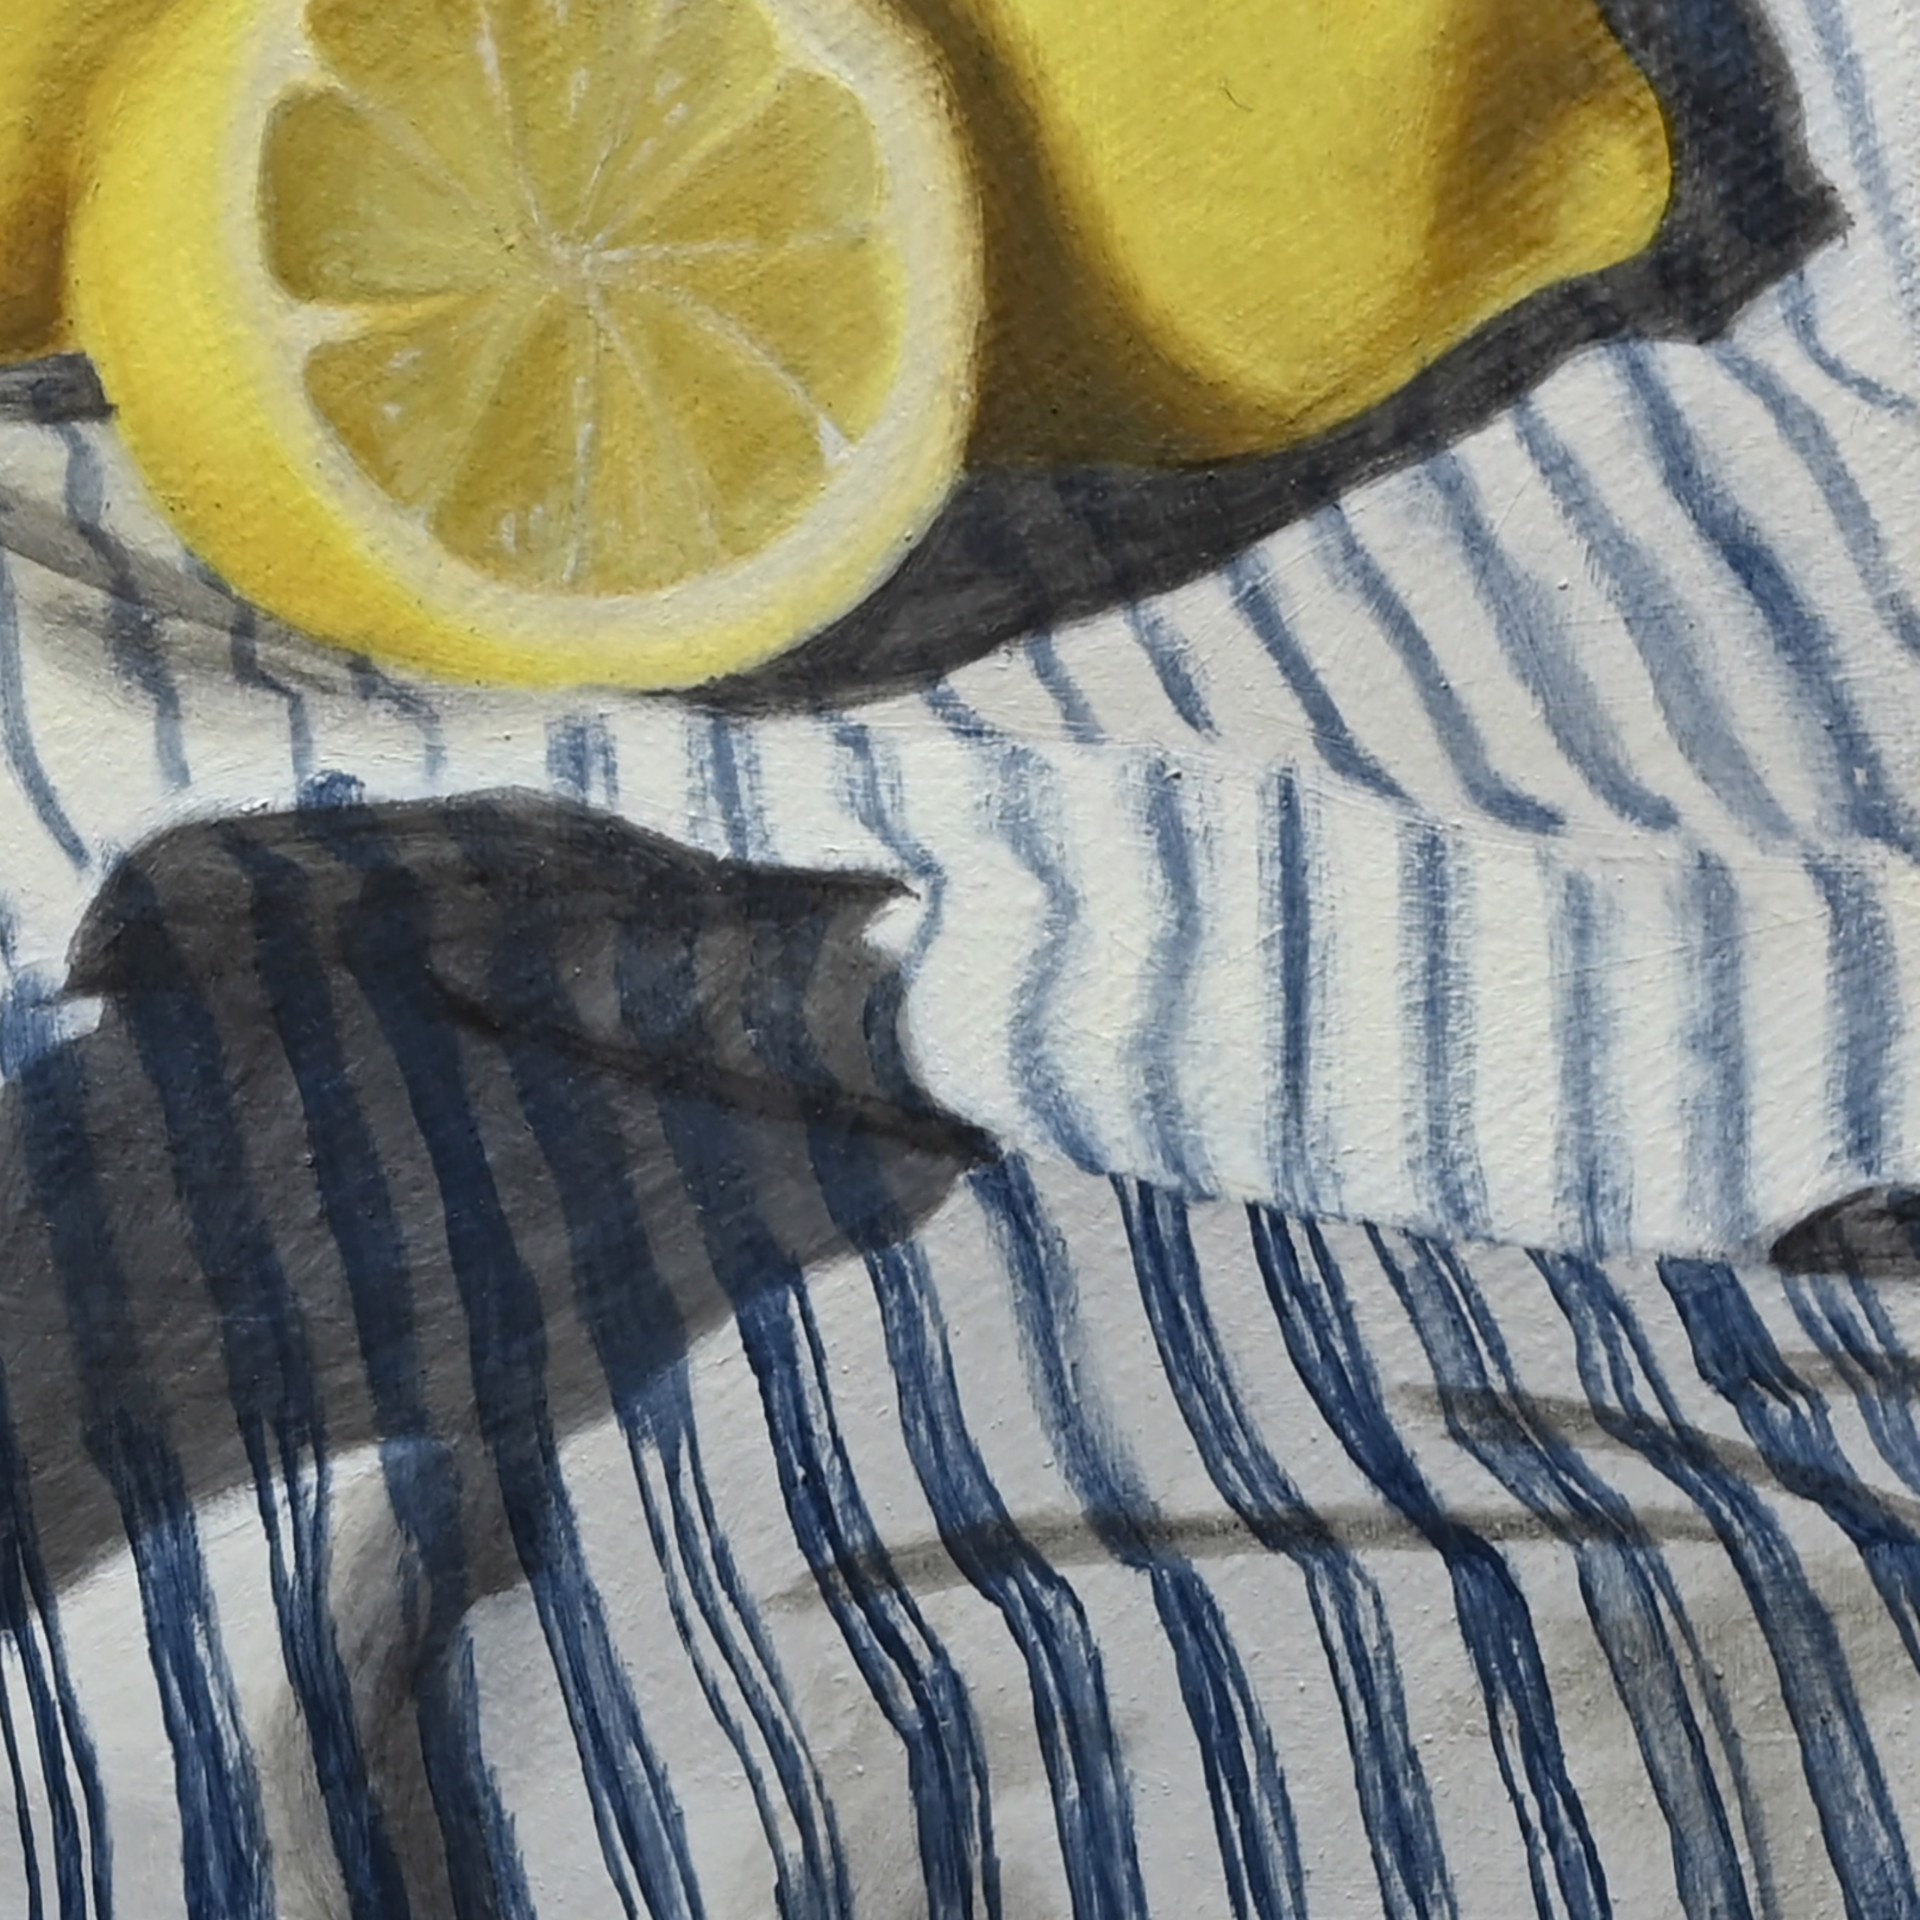 Distanced Lemons by Jordan Baker